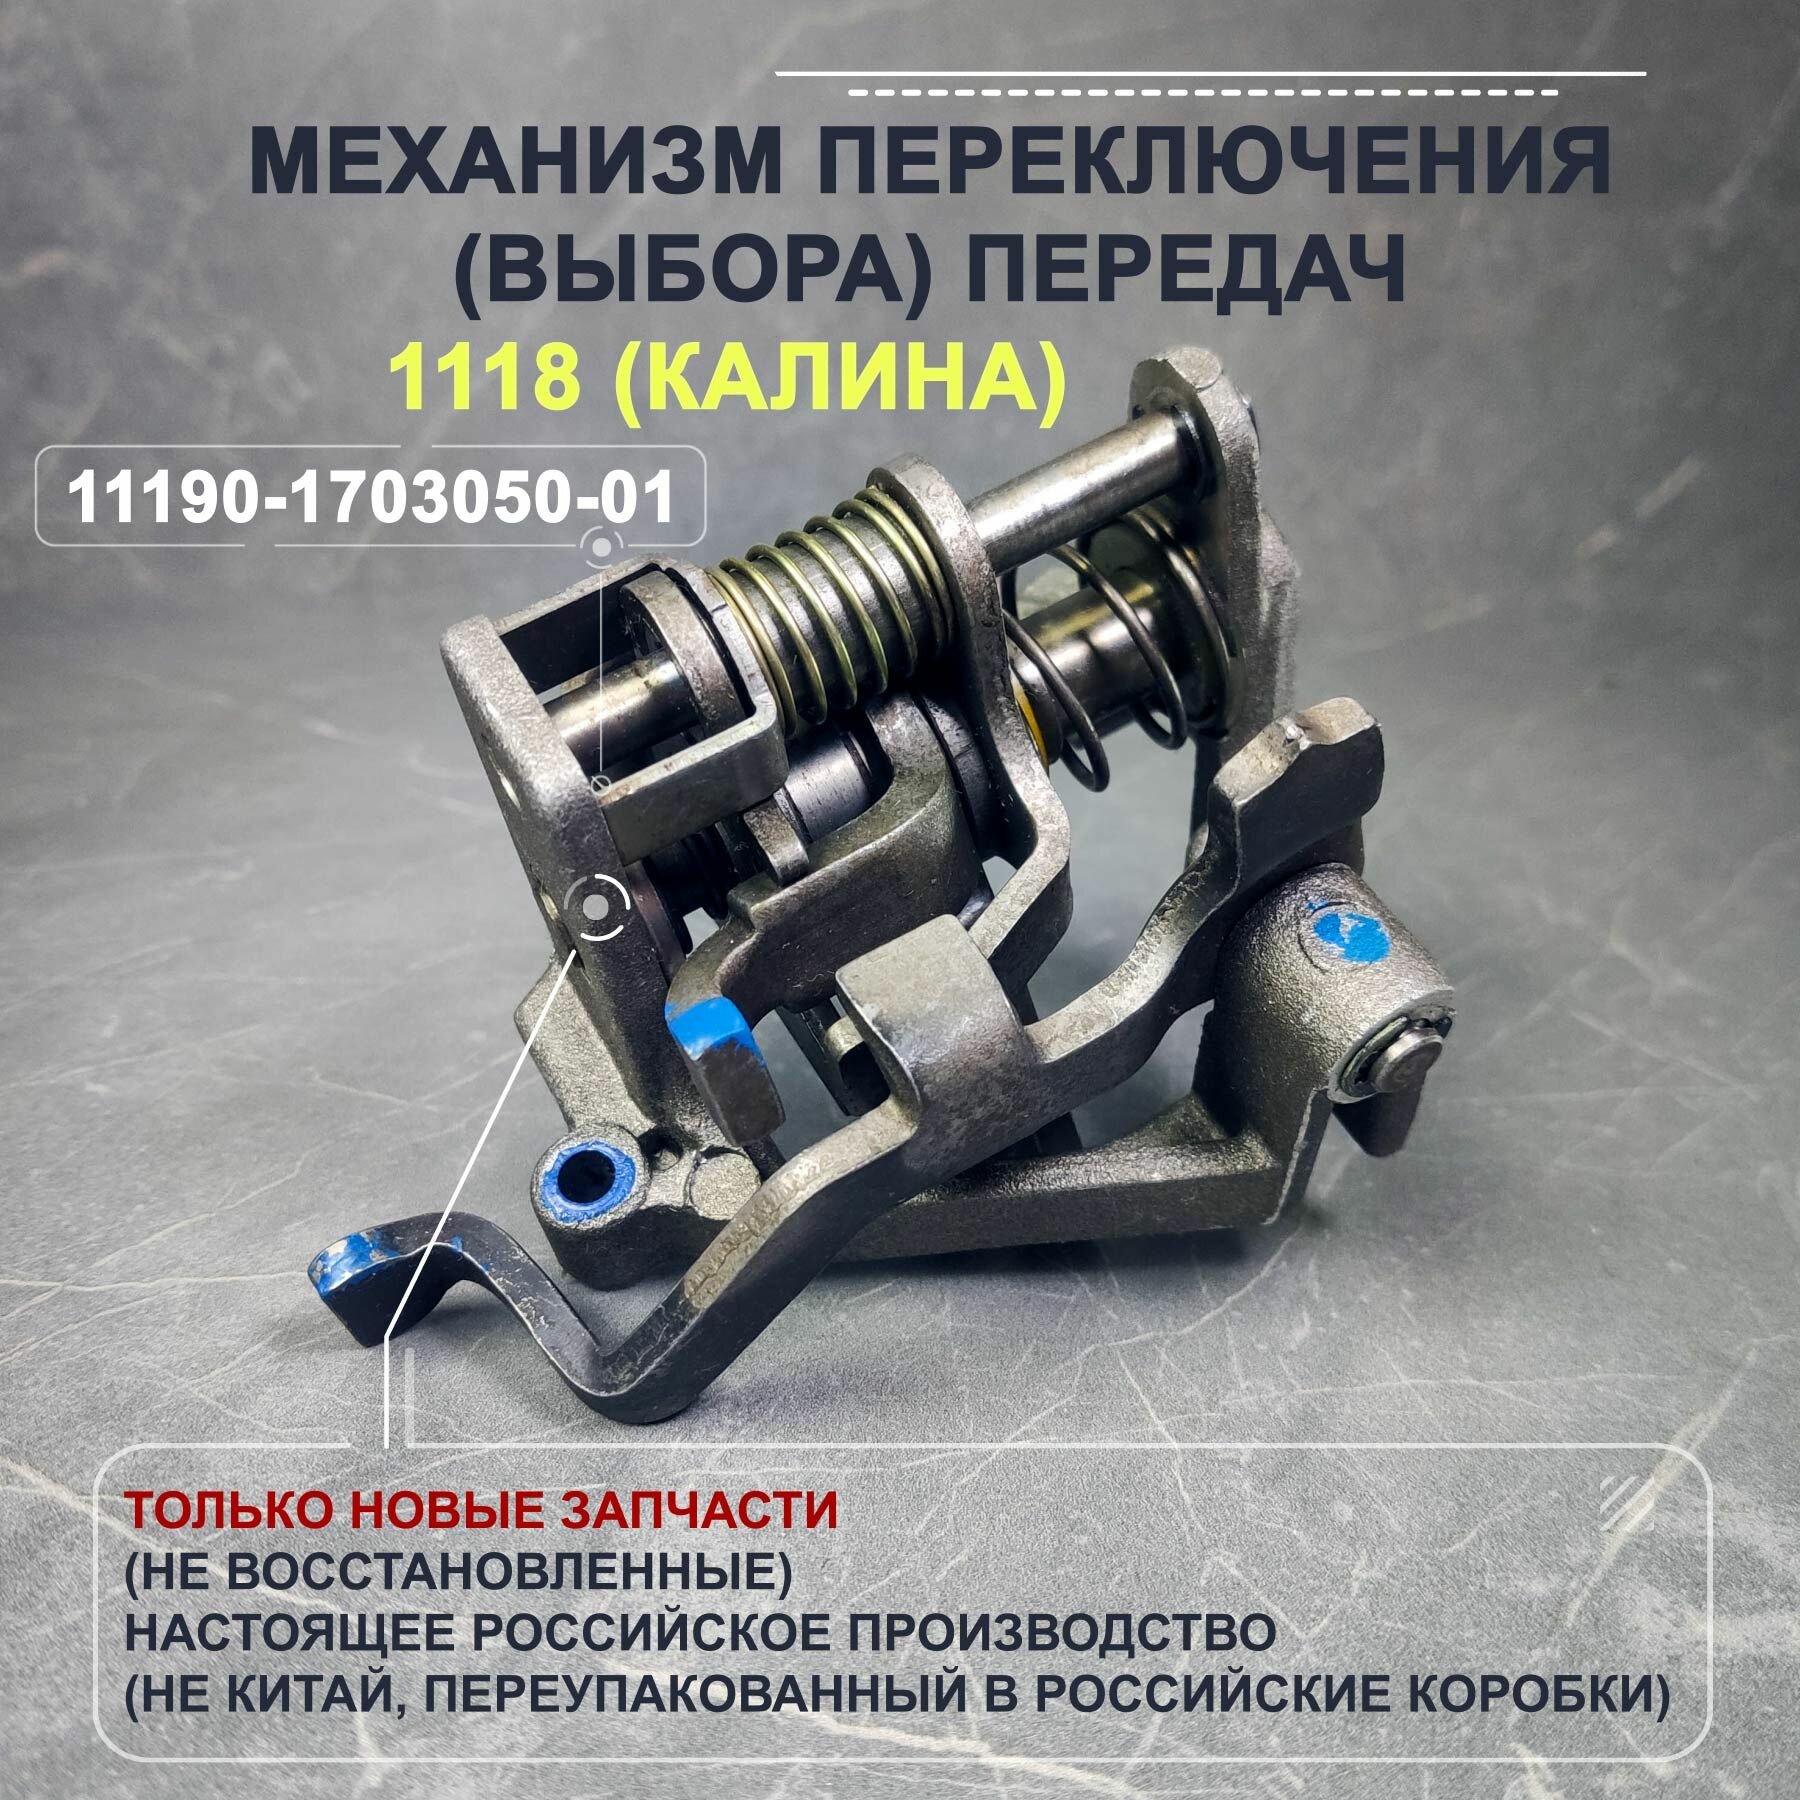 Механизм переключения (выбора) передач КПП ВАЗ 1118 (Калина)